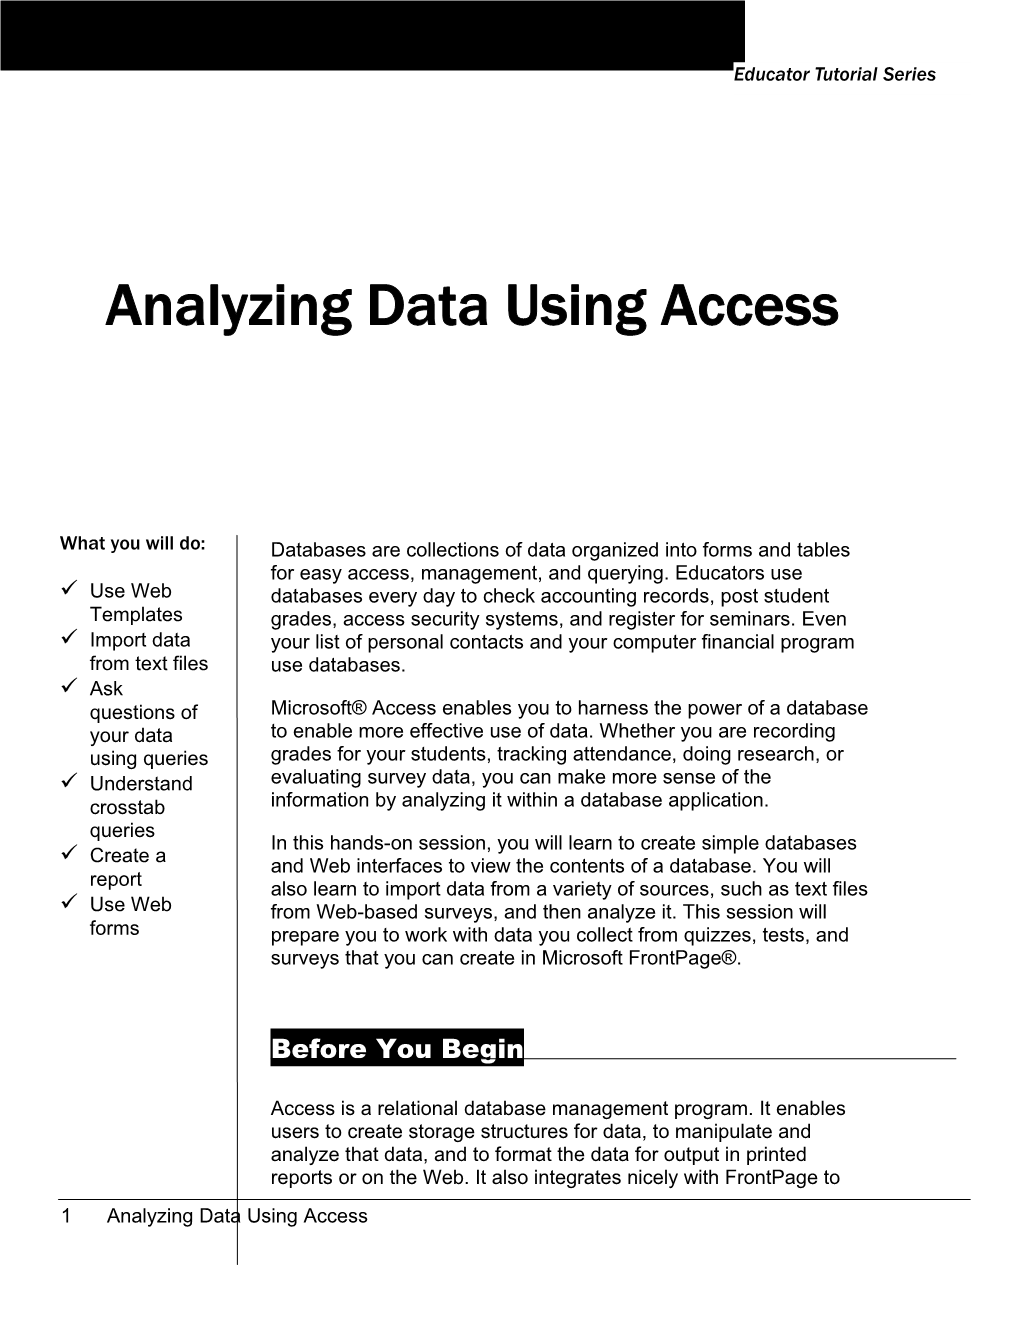 Analyzing Data Using Access